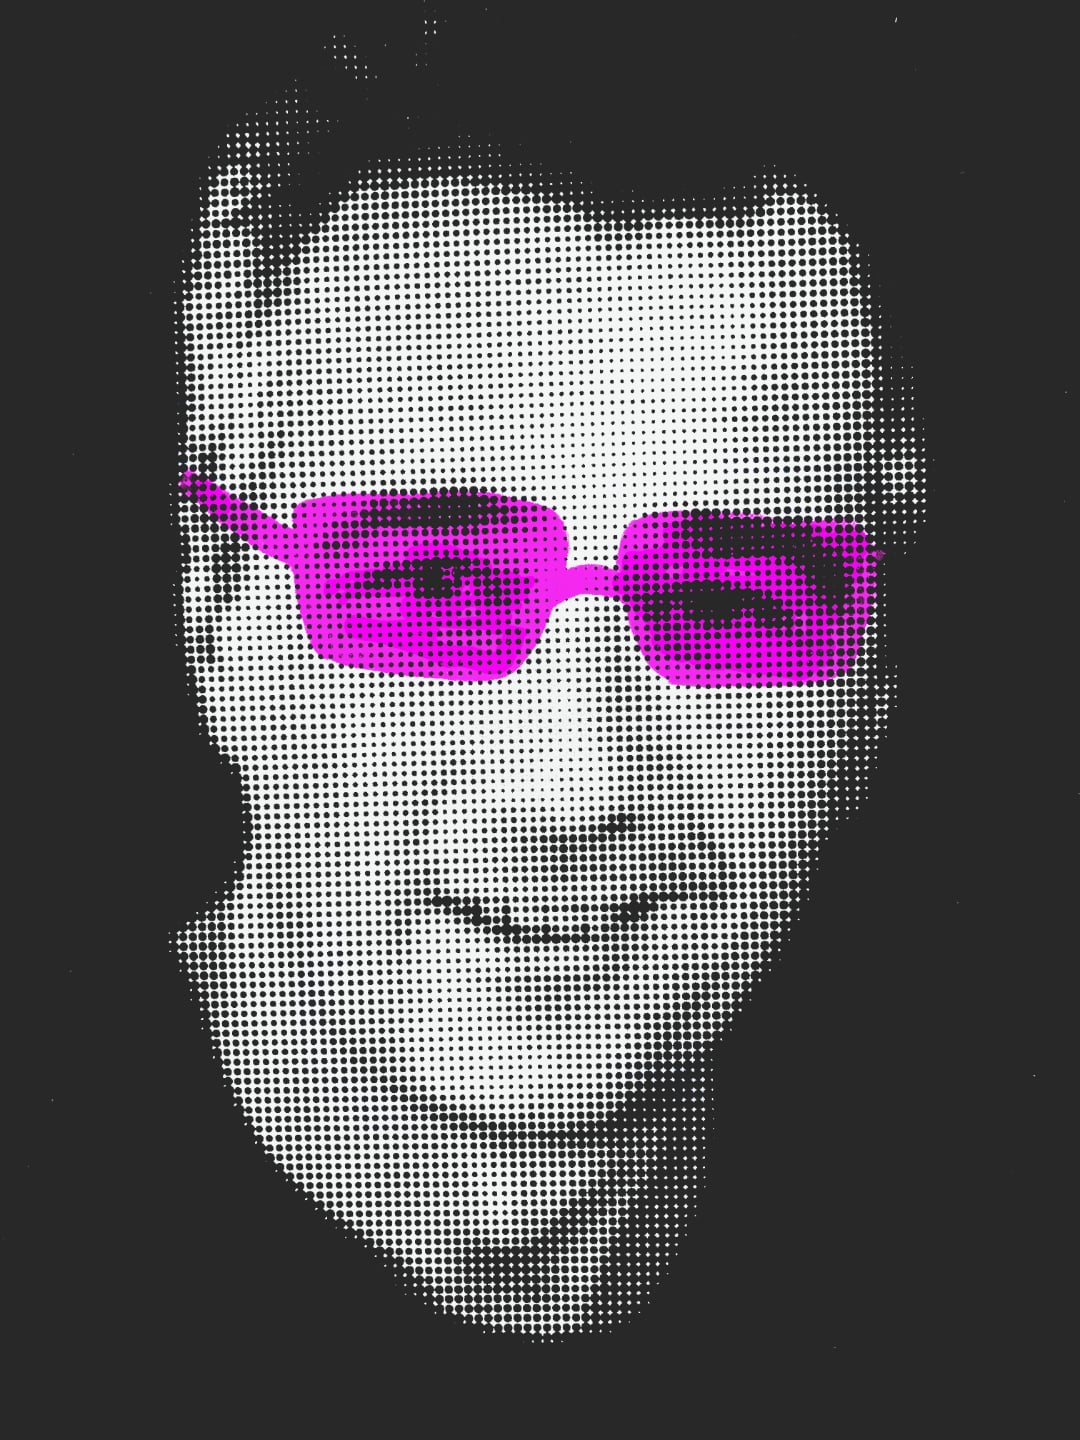 Rudolf Horaczek Portrait mit rosaroter Brille | Rudolf Horaczek portrait with pink glasses